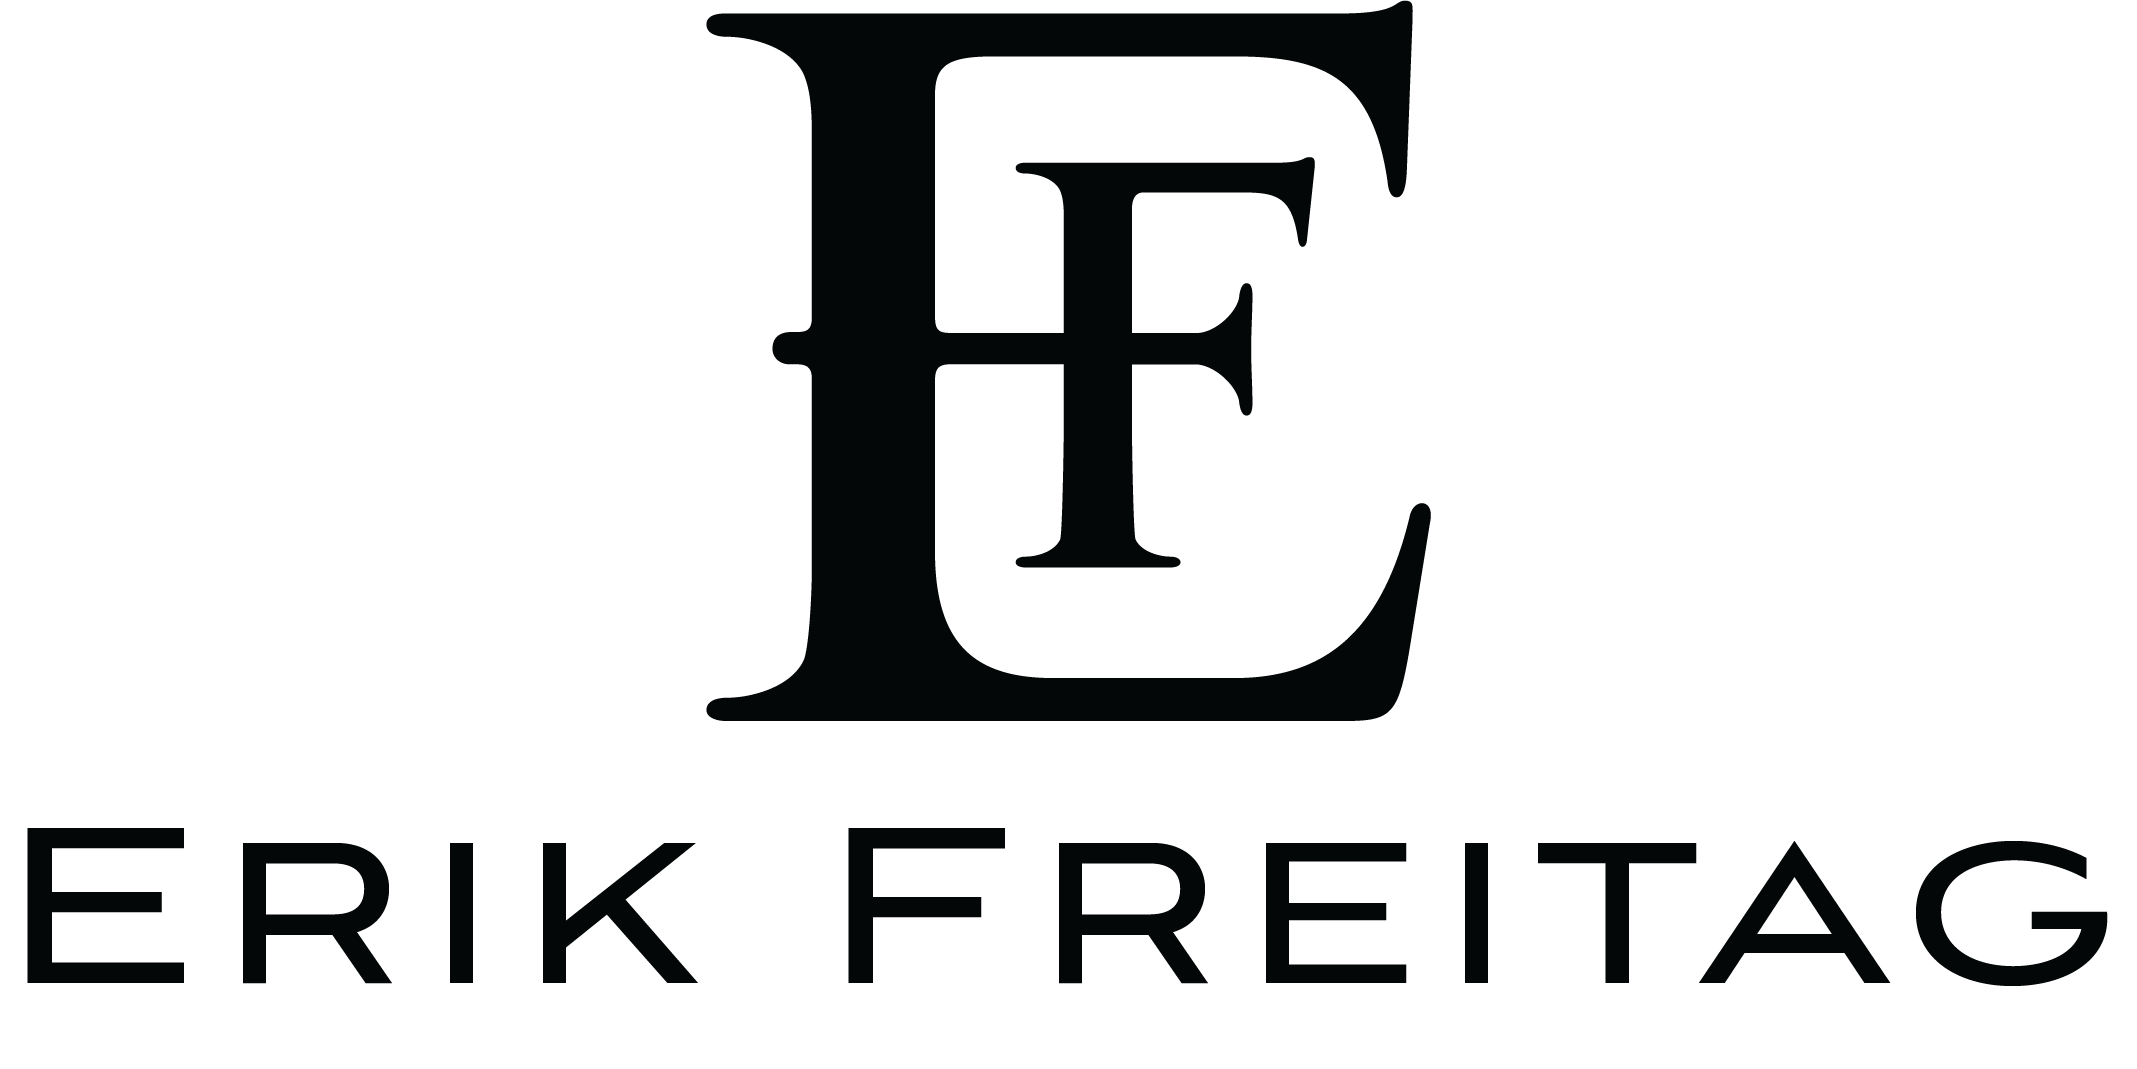 Erik Freitag